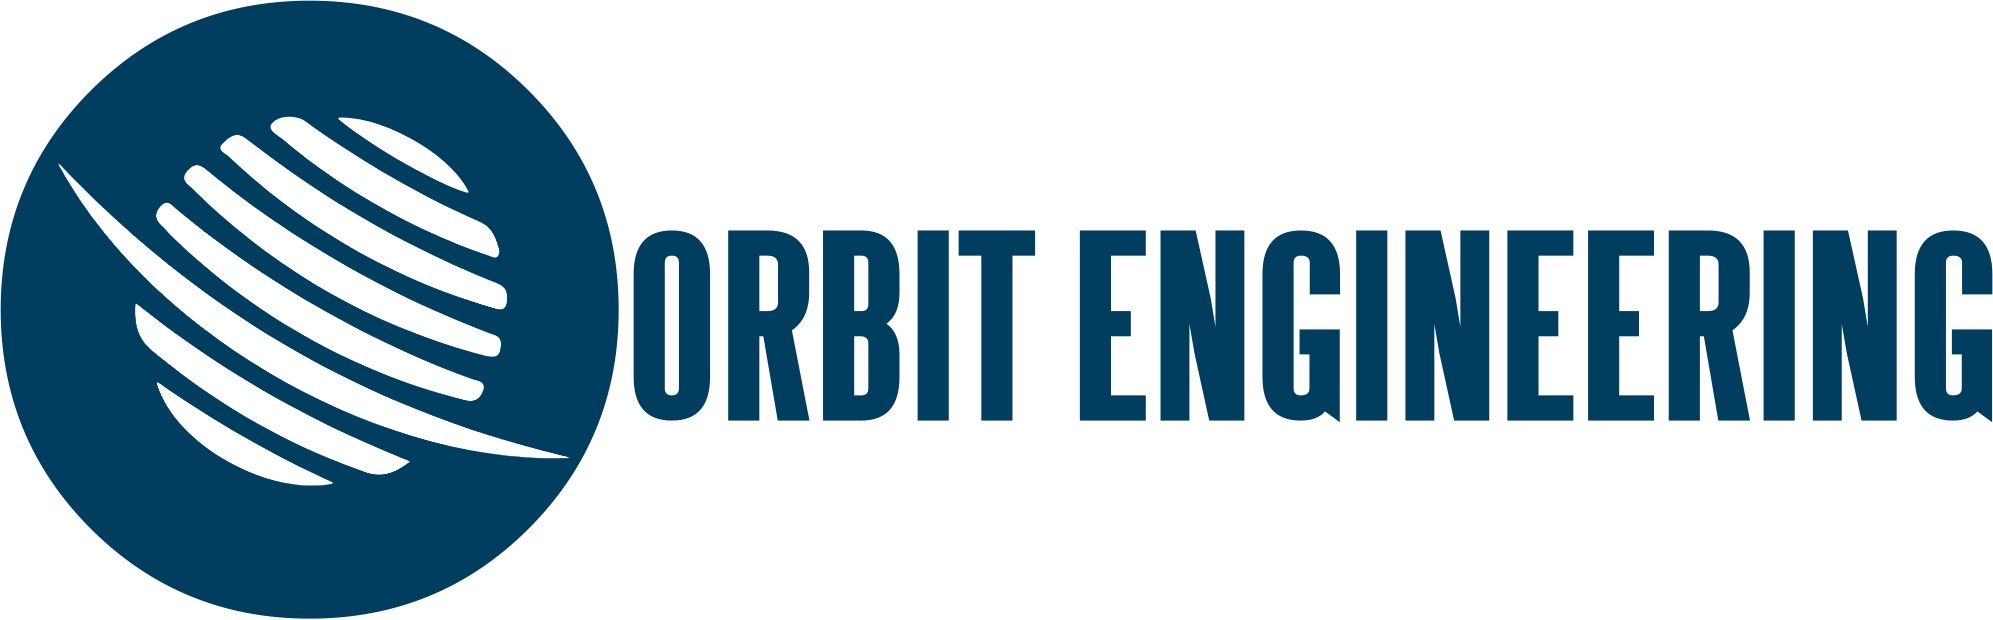 Orbit Engineering Limited